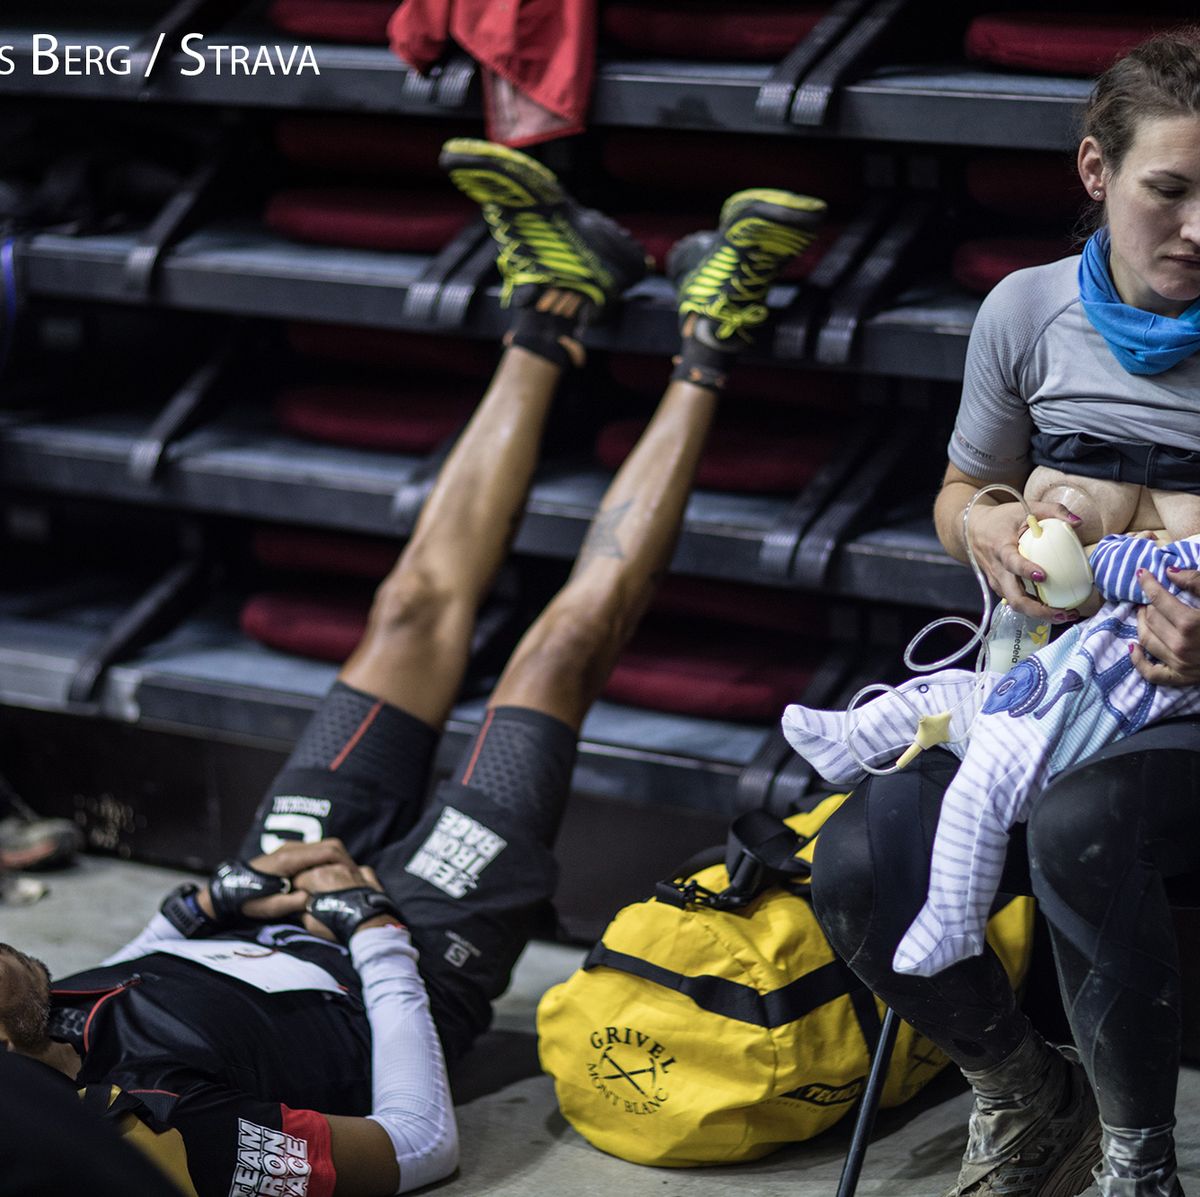 preview for British ultra runner Sophie Power runs UTMB whilst breastfeeding